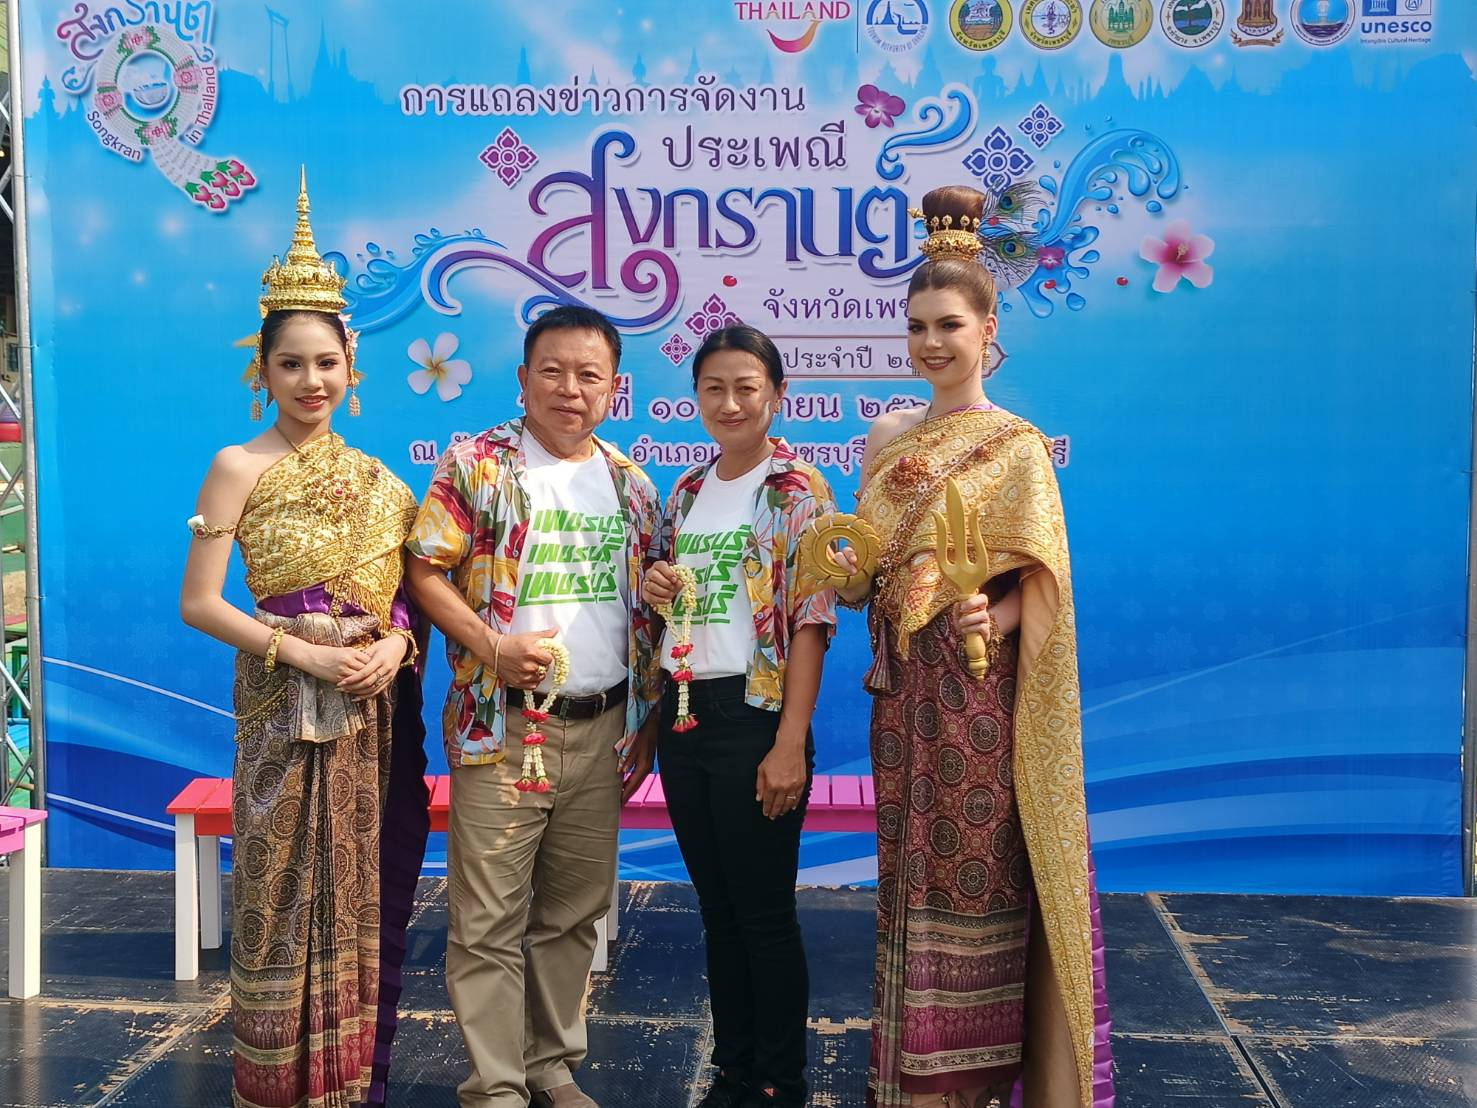 ททท.สำนักงานเพชรบุรี แถลงข่าว การจัดงานประเพณีสงกรานต์ ประจำปี 2567 ส่งเสริมการท่องเที่ยวงานเทศกาลสงกรานต์ไทย